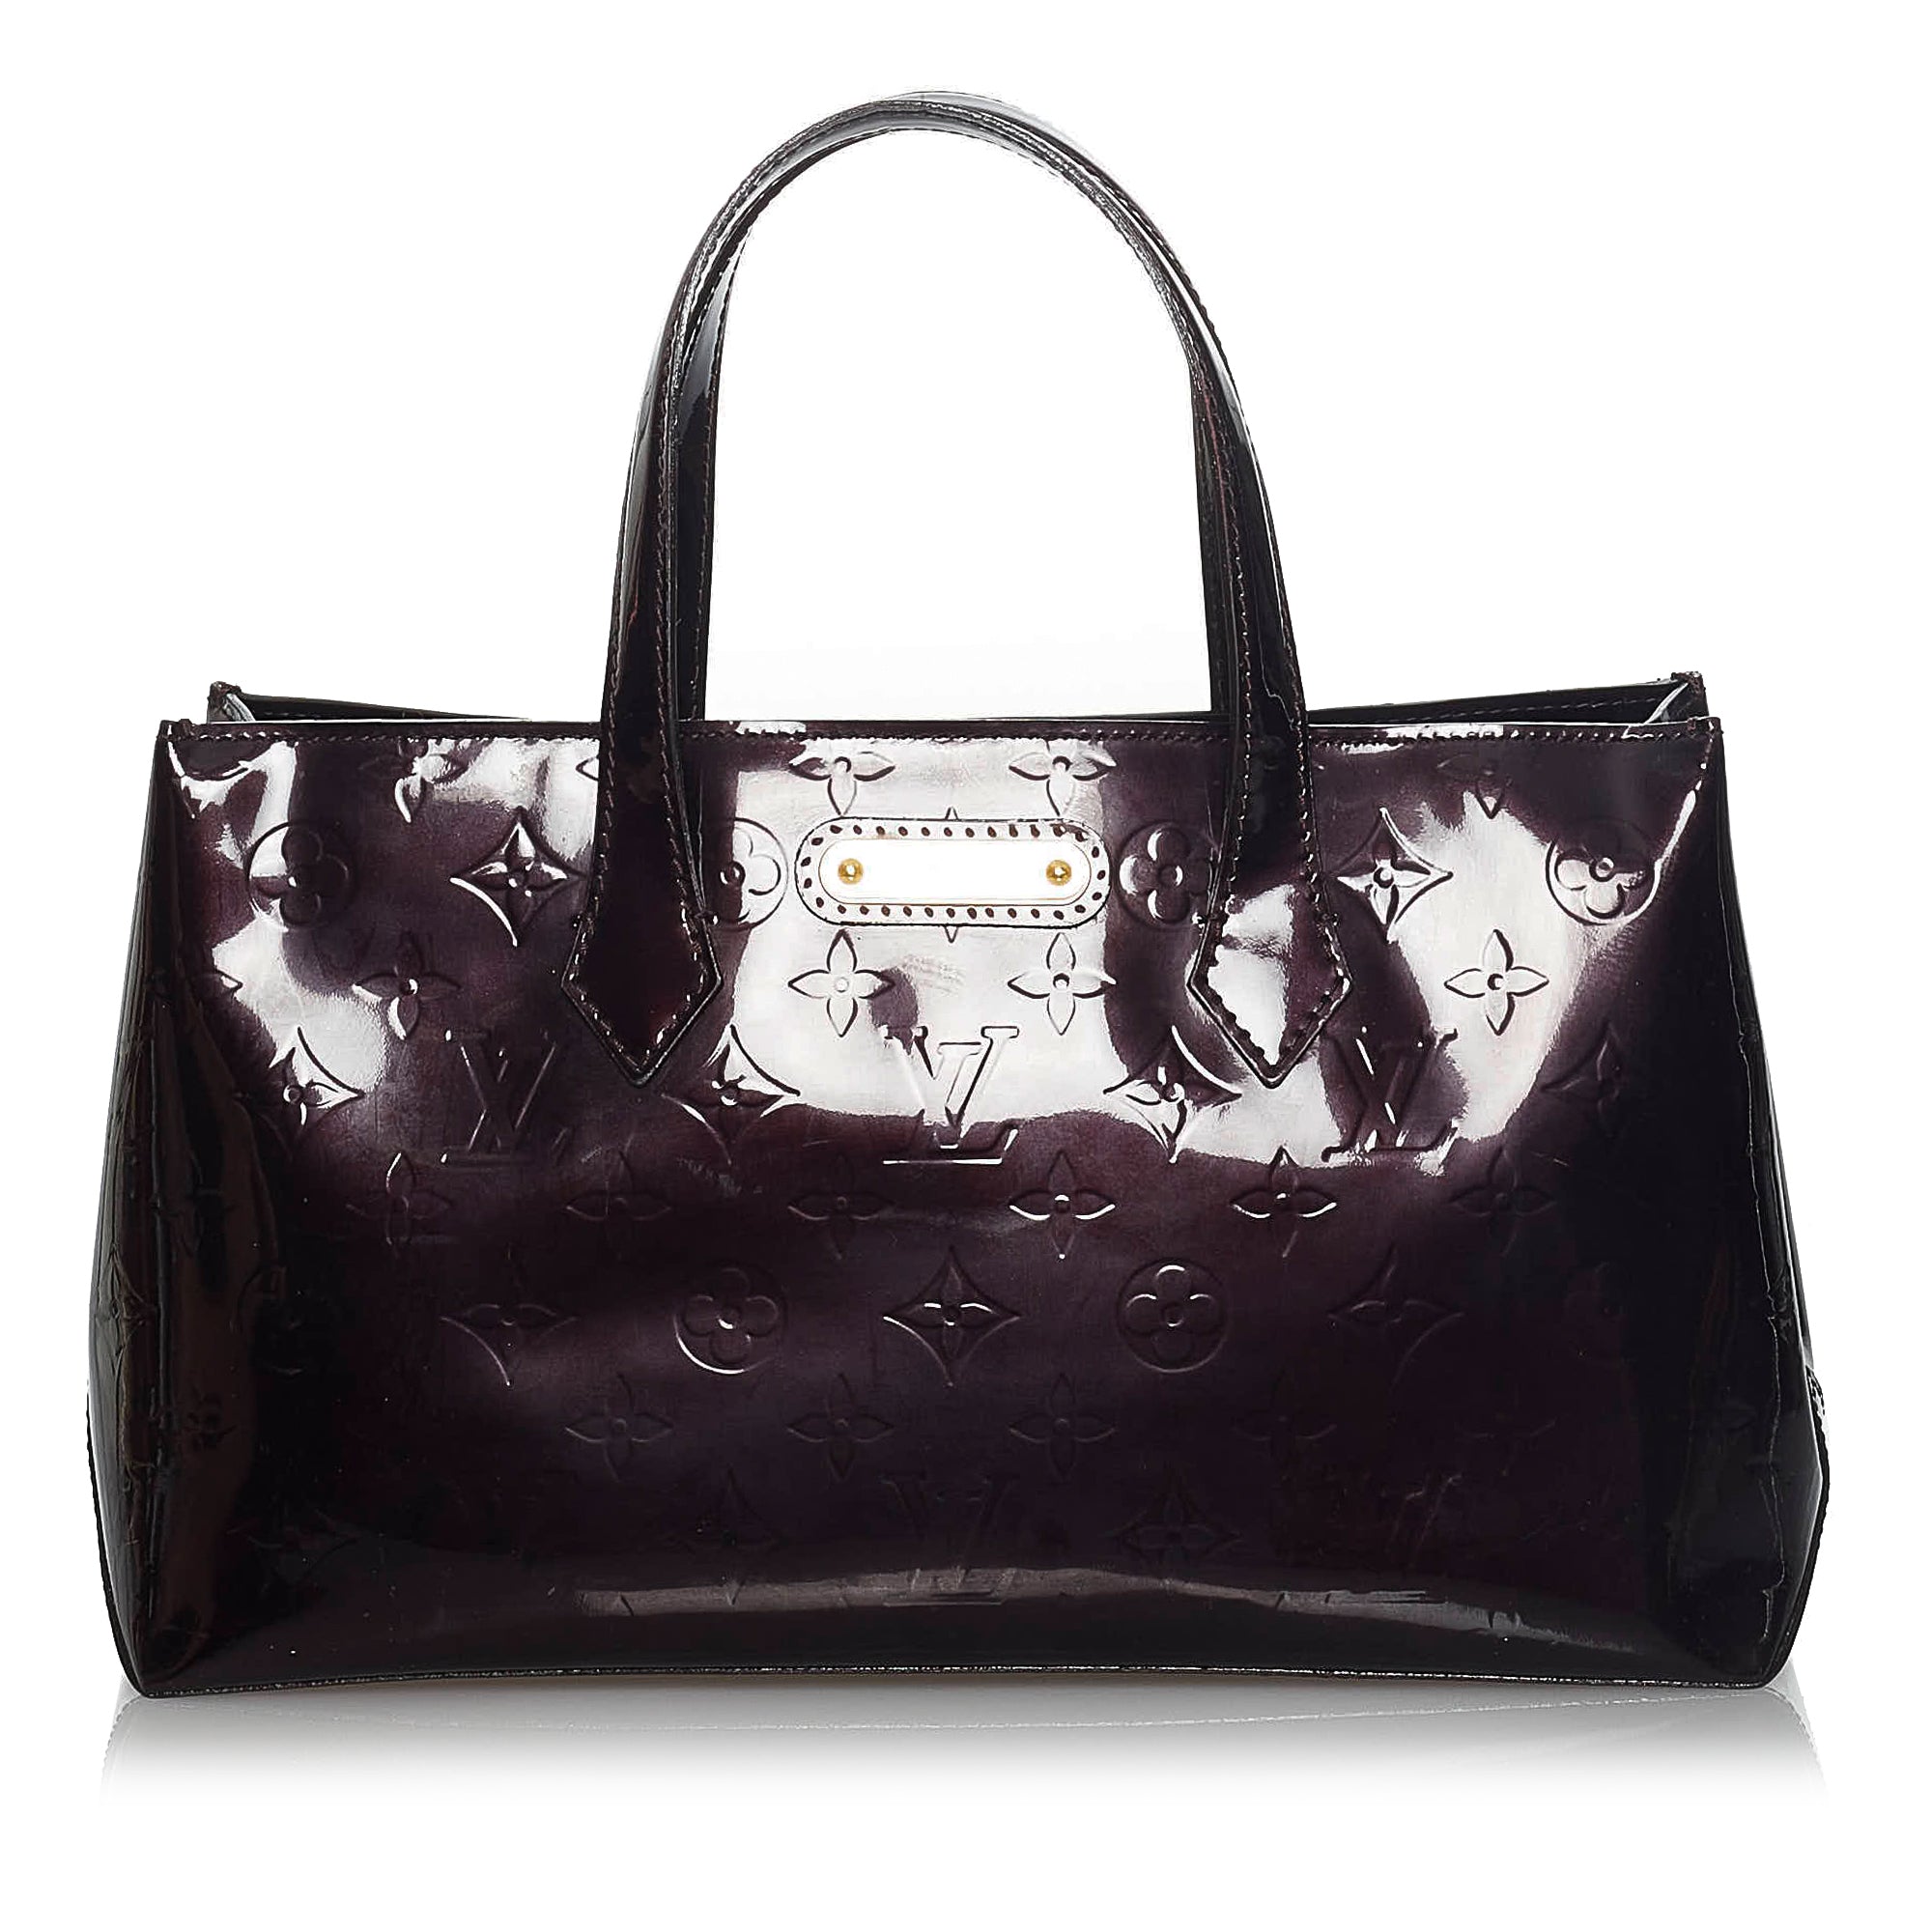 Authentic Louis Vuitton Purple Vernis Wilshire GM Tote Shoulder Bag